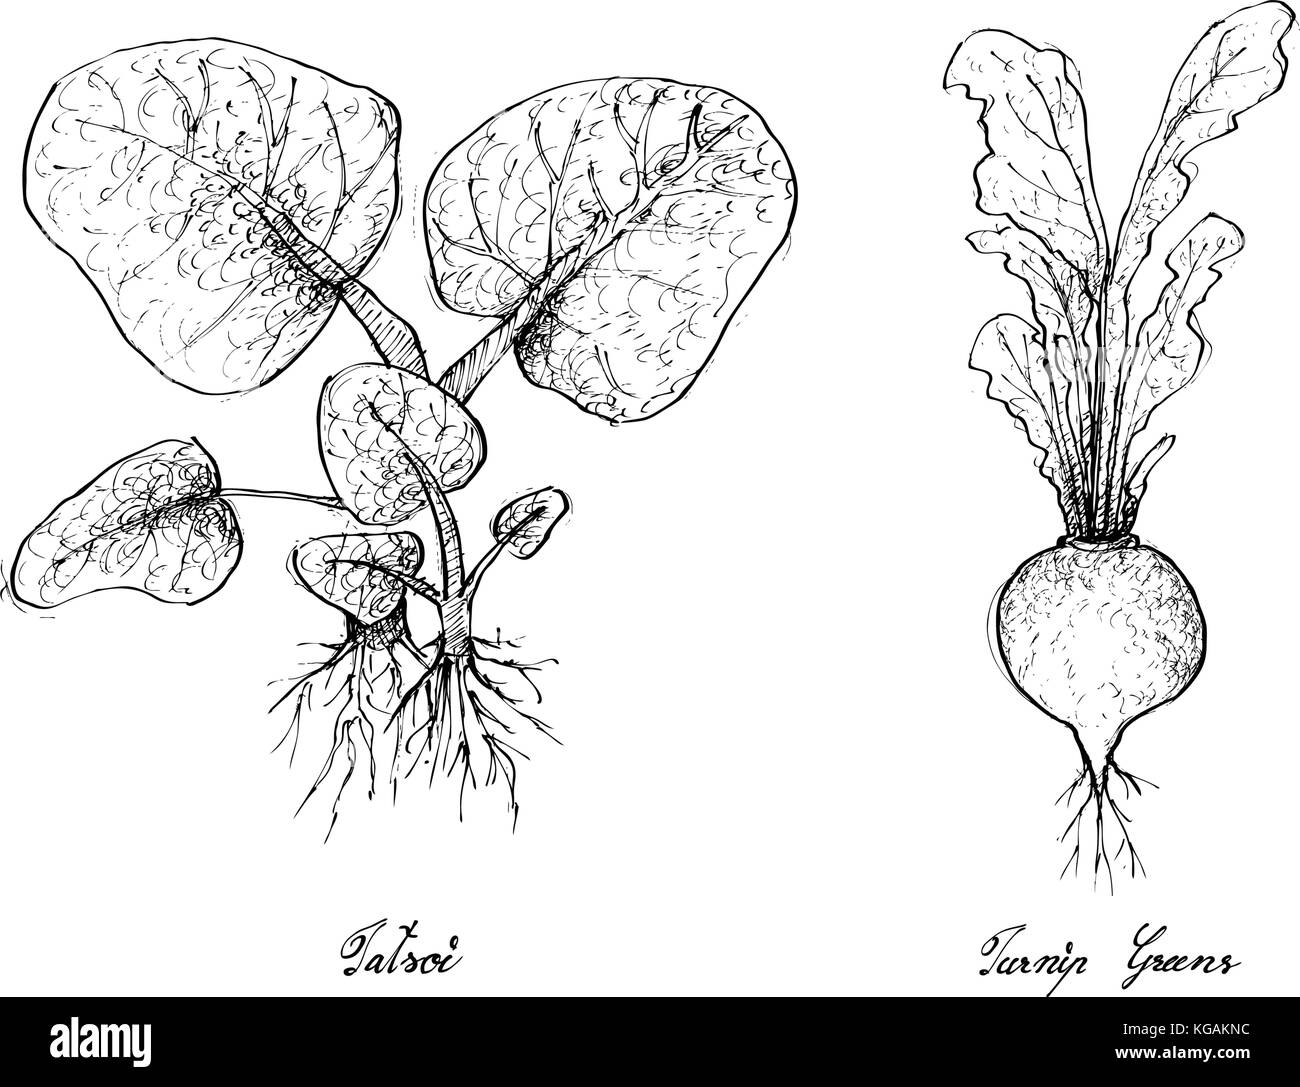 Salat, Illustration von Hand gezeichnete Skizze köstliche frische grüne tatsoi und Kohlrabi Pflanzen auf weißem Hintergrund. Stock Vektor